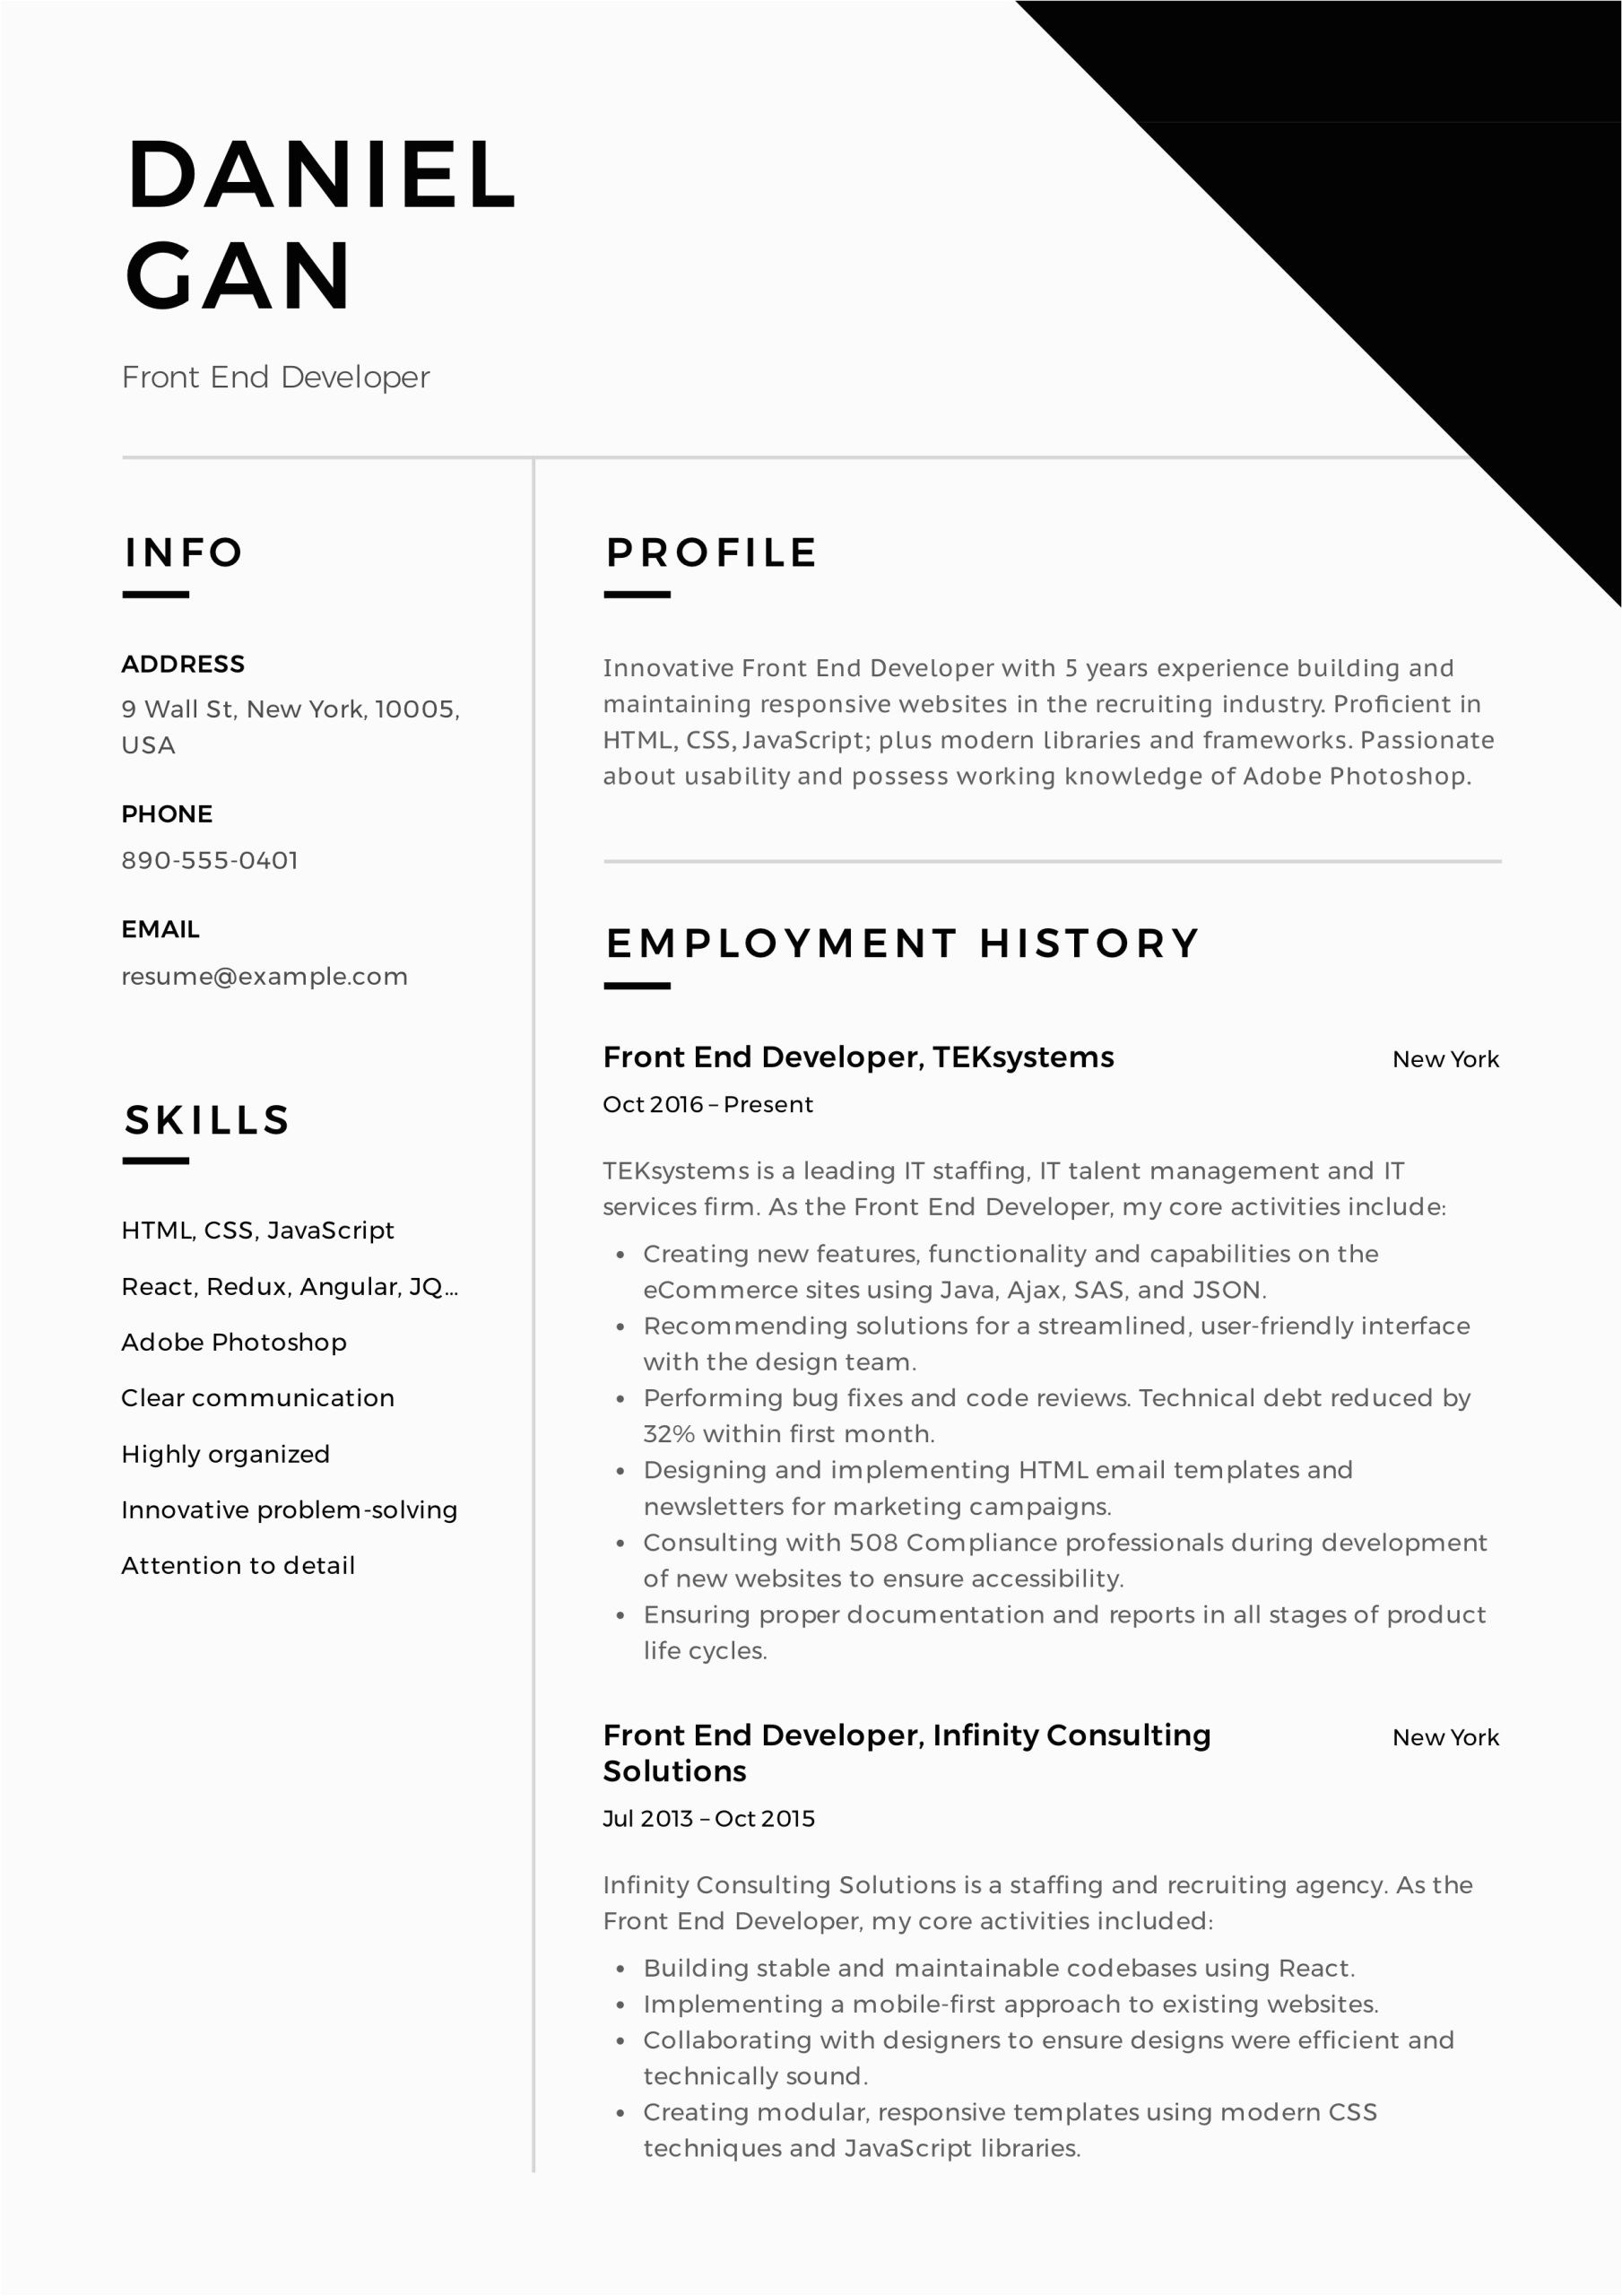 Front End Developer Job Resume Samples Front End Developer Resume Guide & Sample – Resumeviking